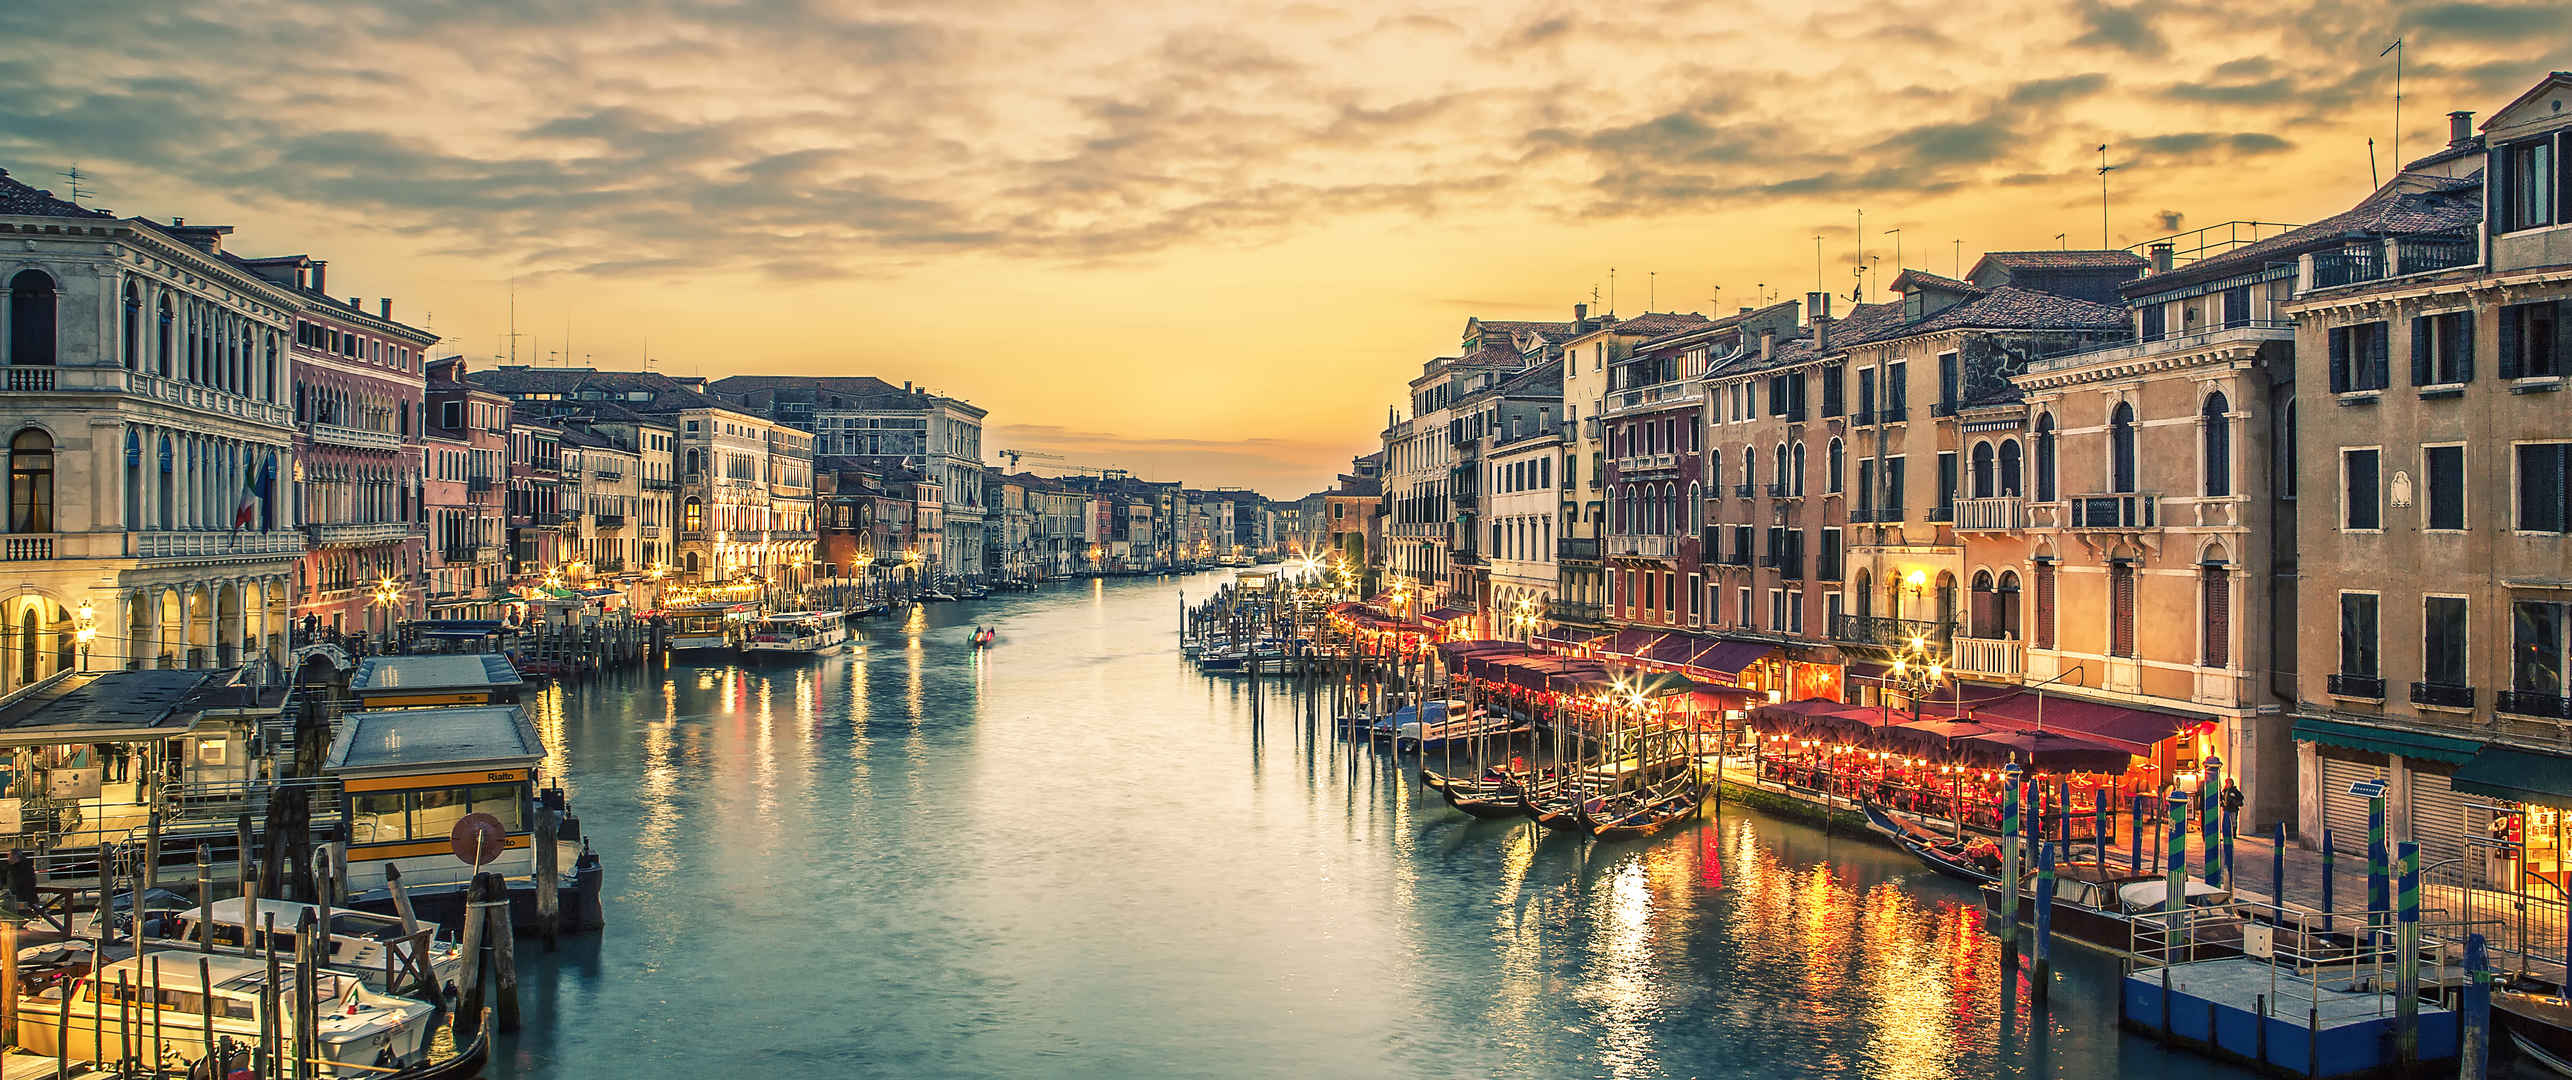 意大利威尼斯的里阿尔托桥大运河图片-